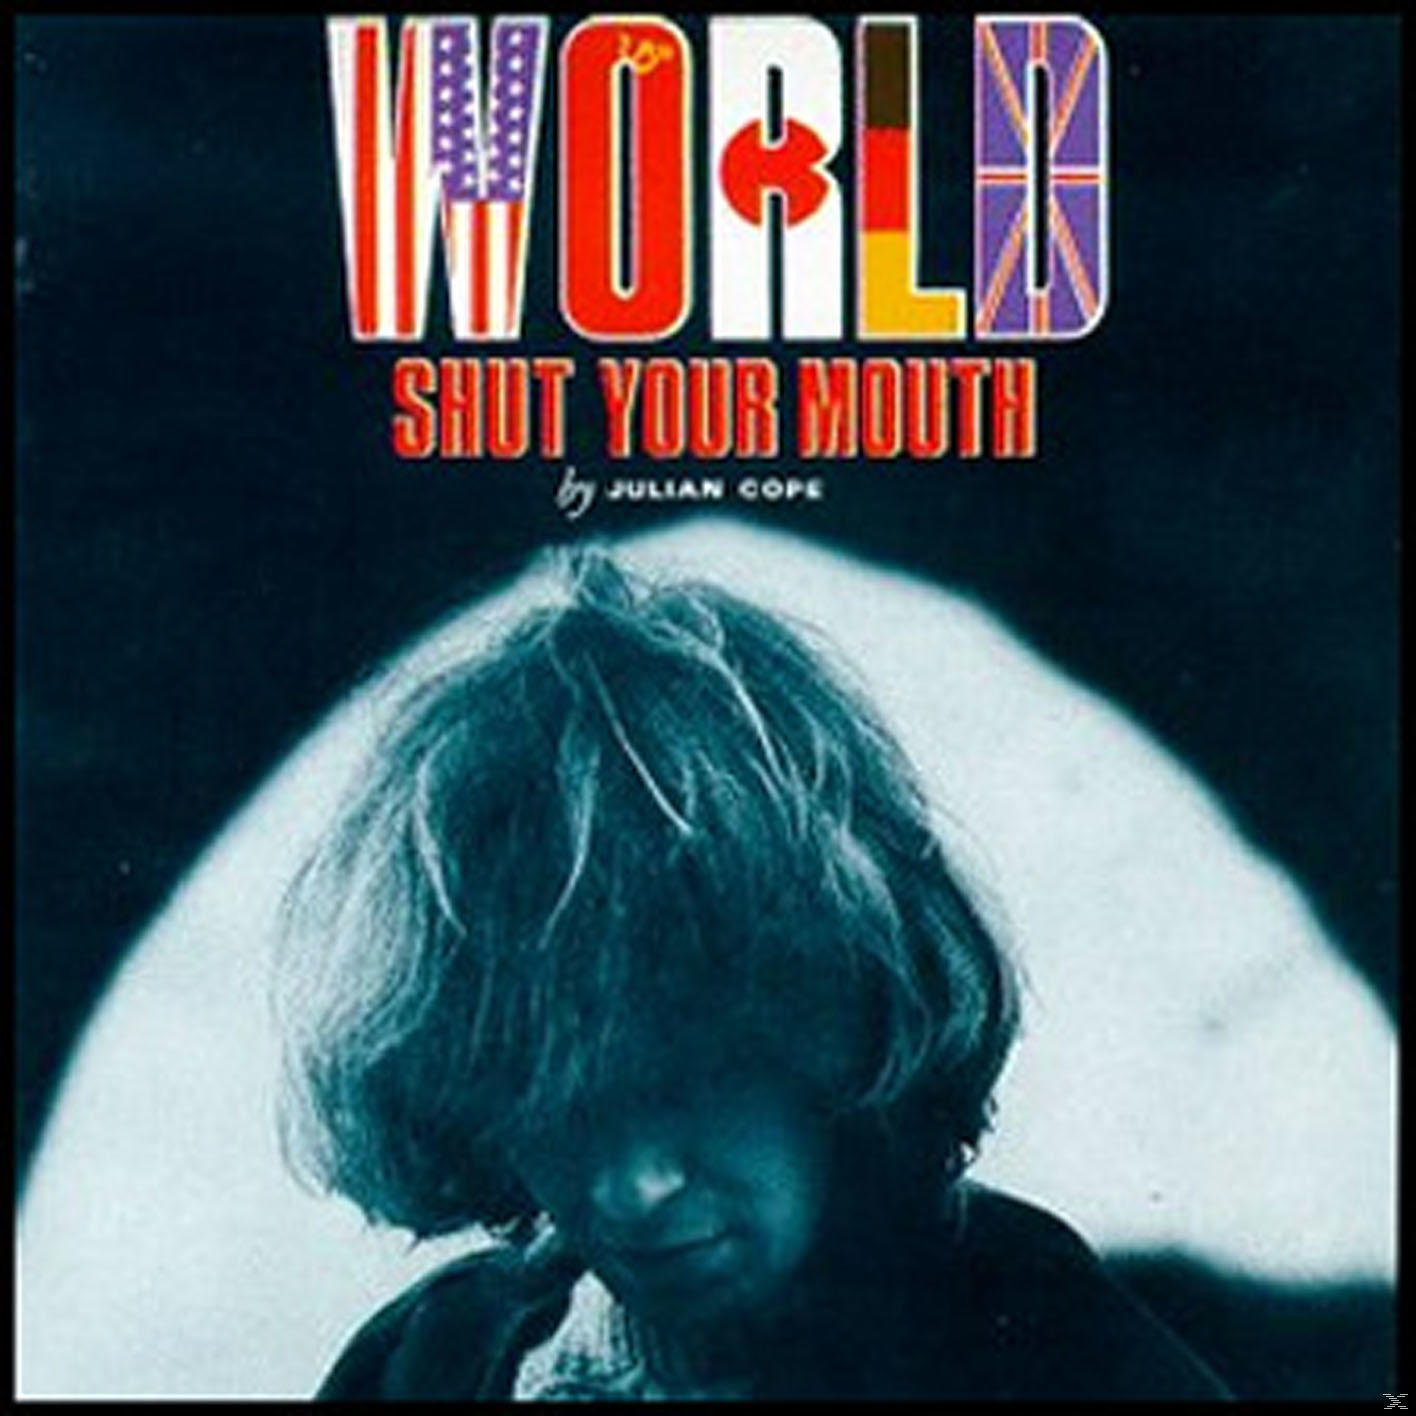 Julian Cope - - Mouth World Your (CD) Shut